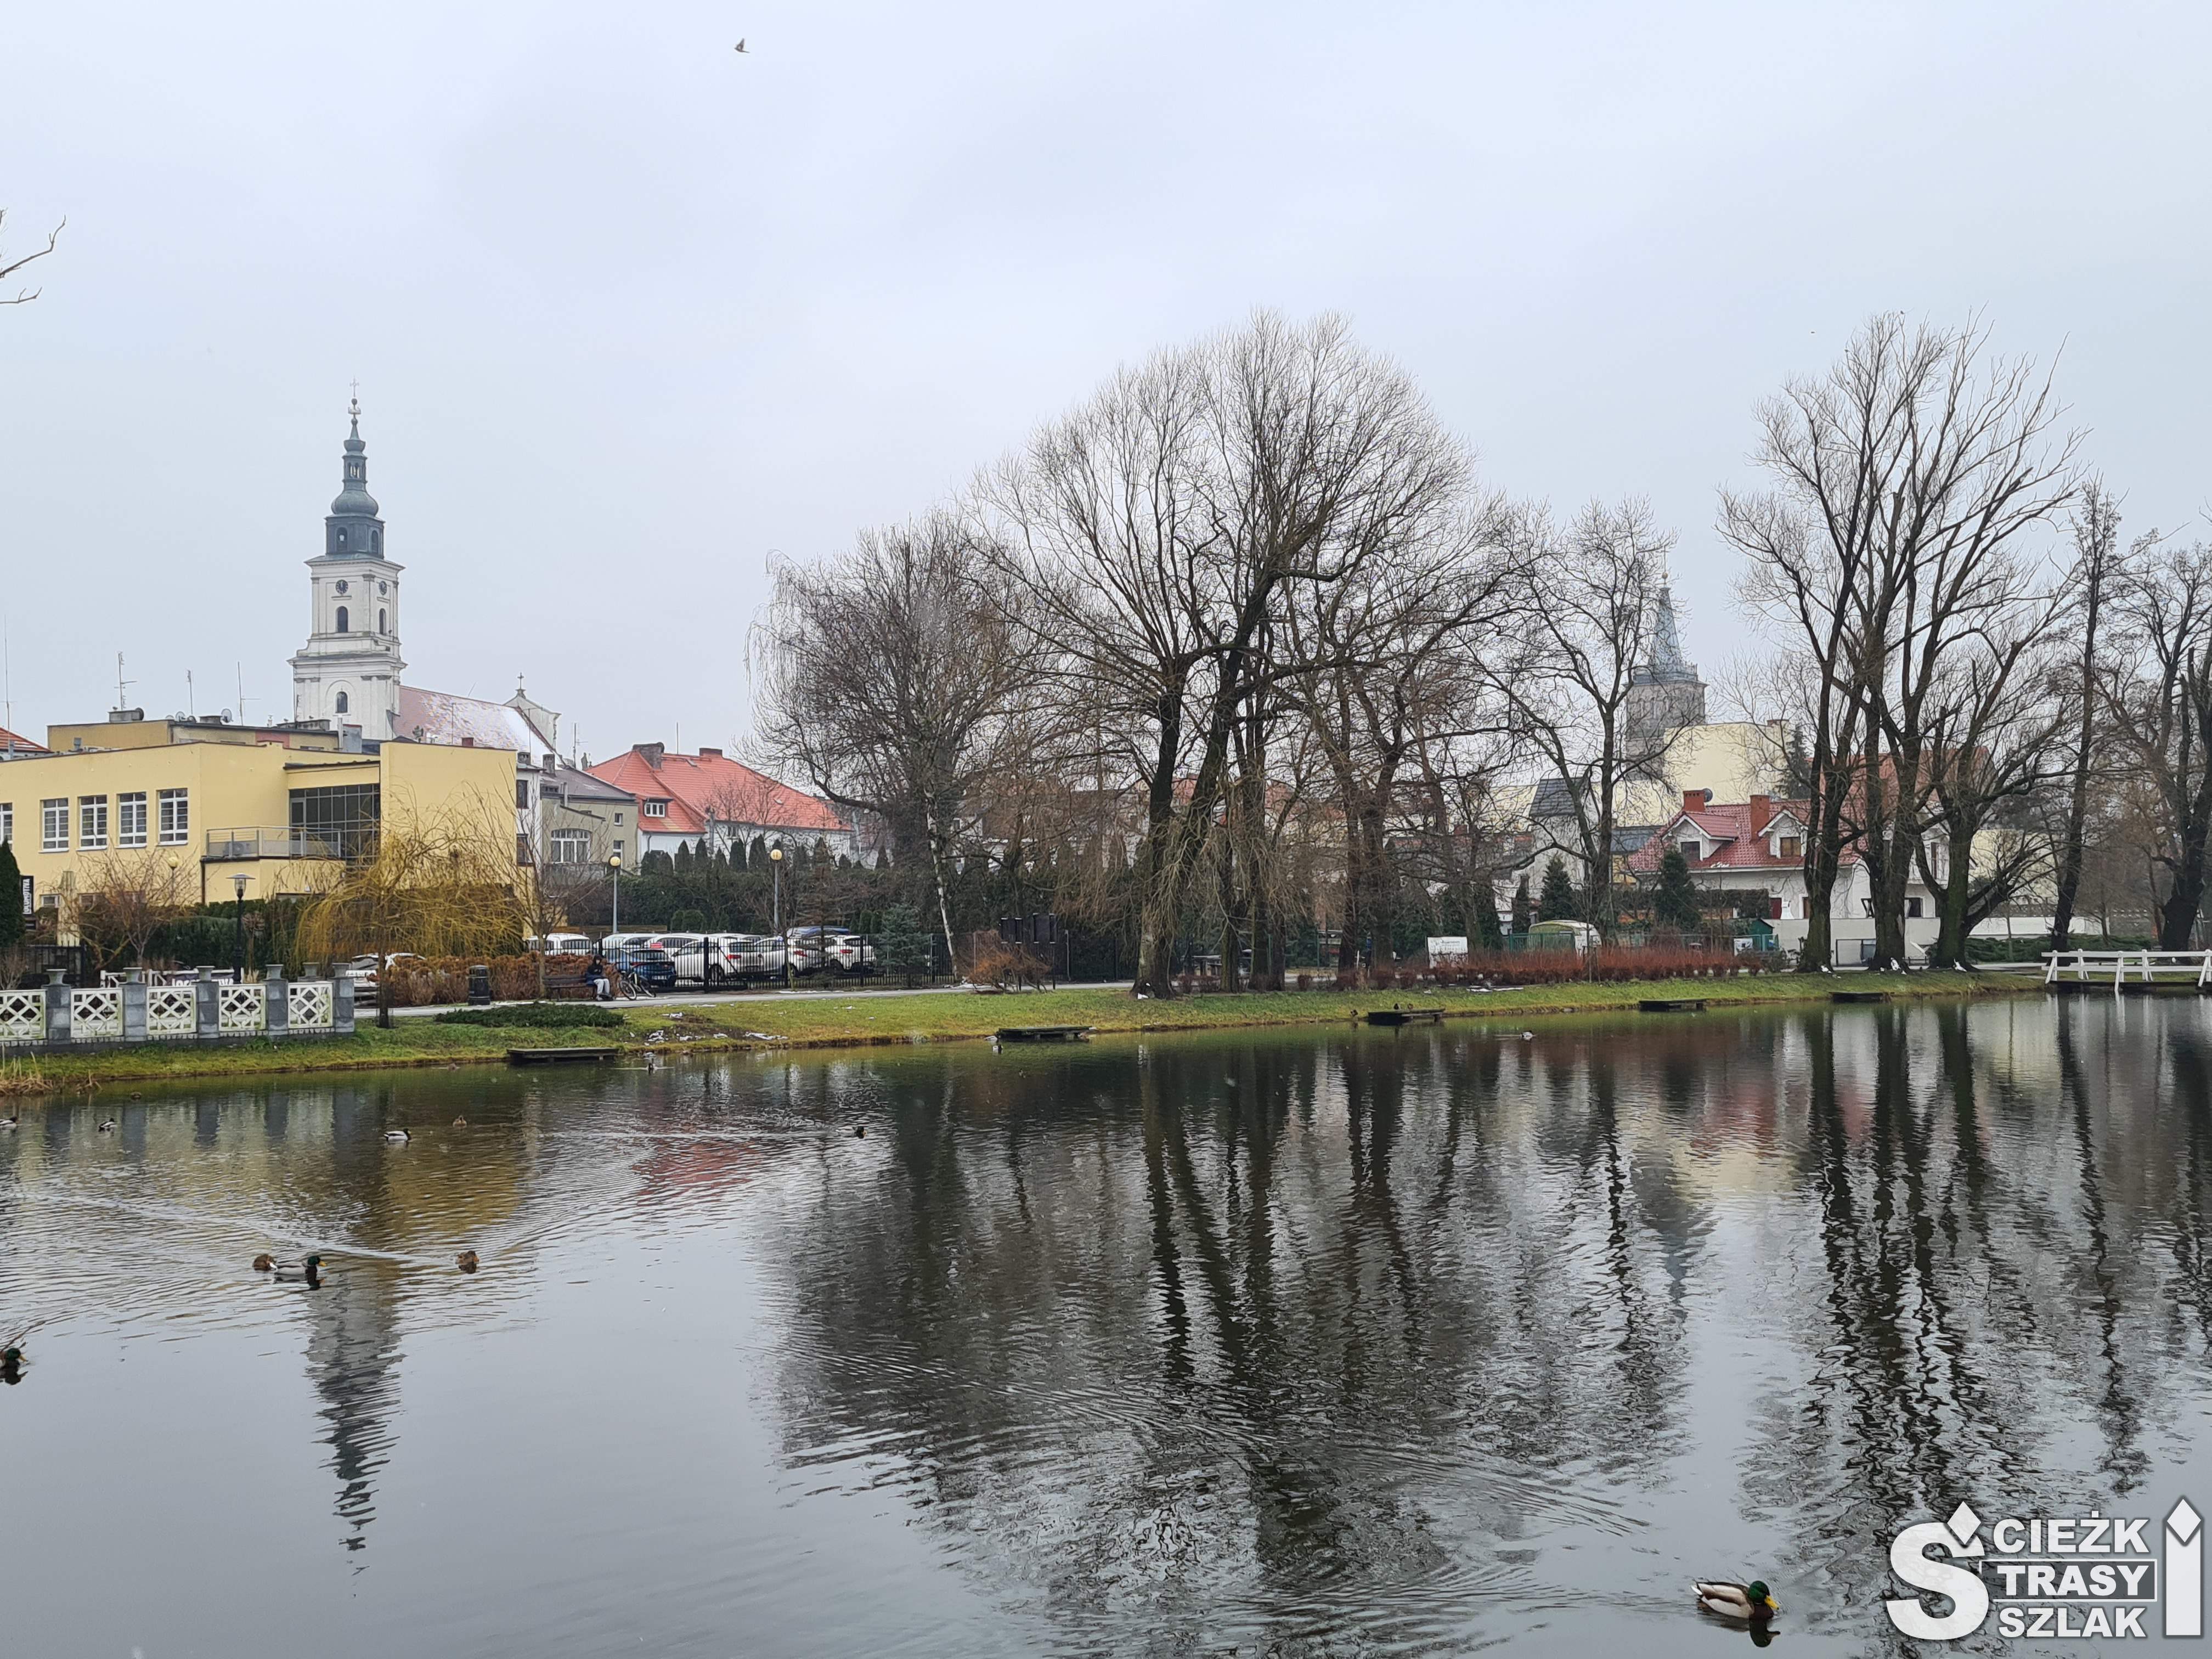 Widok na ratusz miasta Wolsztyn i brzeg jeziora wolsztyńskiego z promenadą i ścieżką dydaktyczną